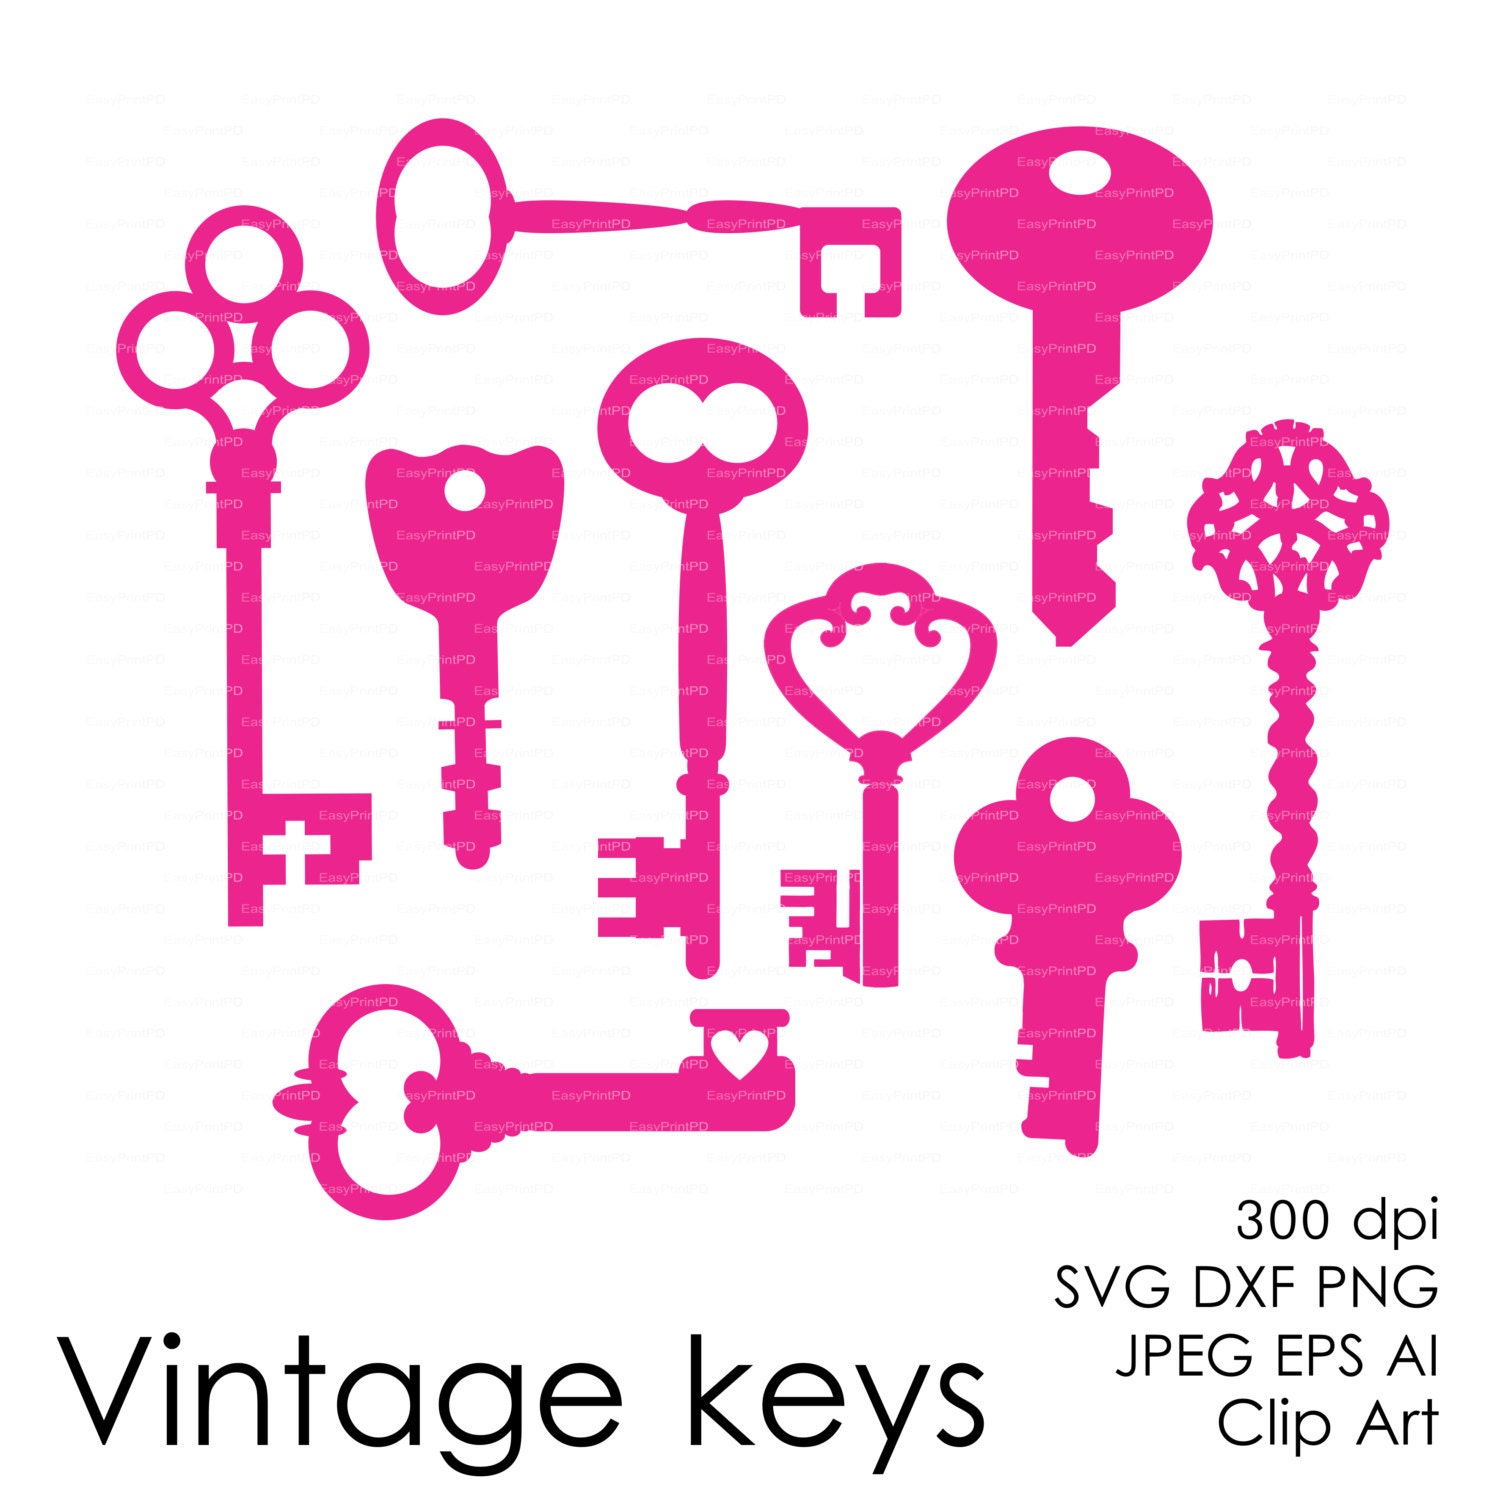 Download Vintage keys Cut File eps svg dxf ai jpg bmp png